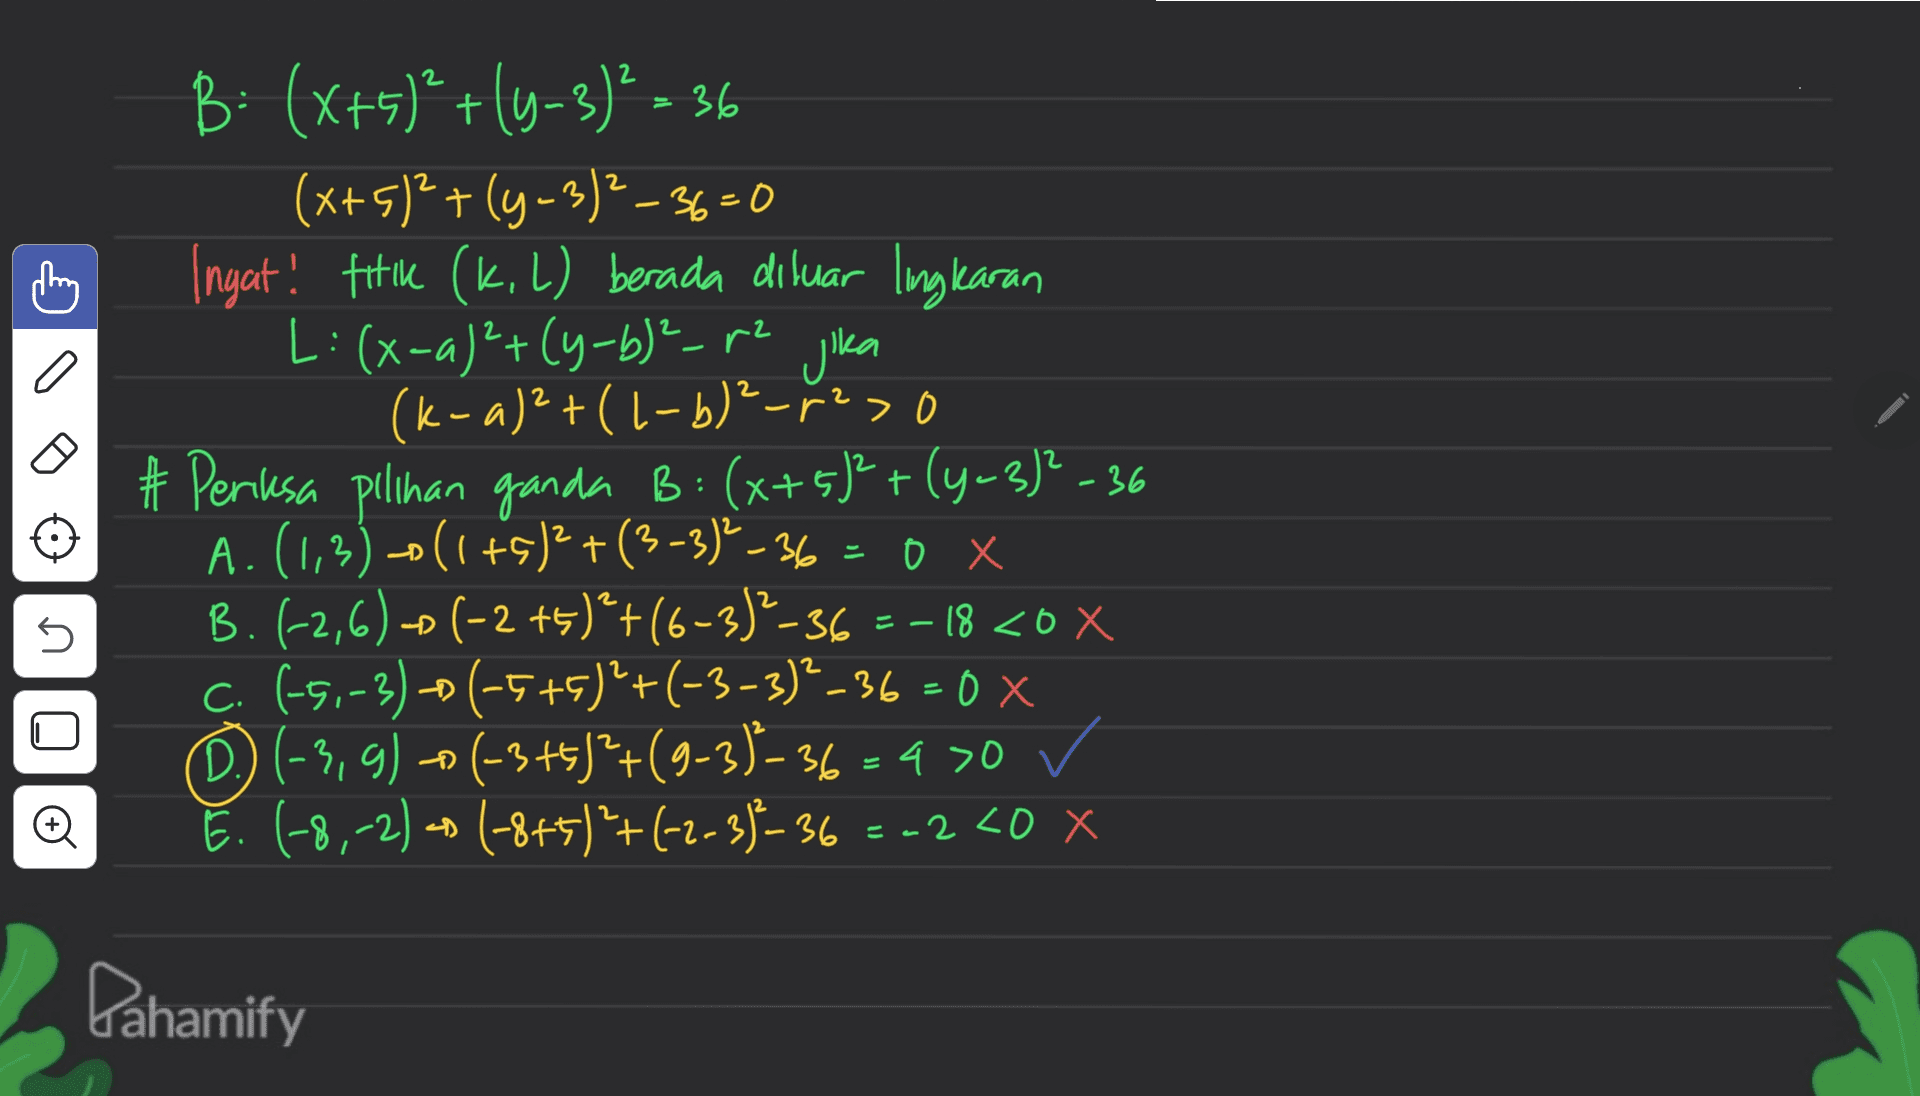 2 2 - B: (x+5)²+(4-3)² = 36 (x+5)2+(y - 3)²-36=0 Ingat! fik (k. L) berada diluar lingkaran L: (x-a)²+(y-b)²-12 jika (k-a)2+(1-b)²_r23 # Peresa pilihan ganda B: (x+5)²+(4-3)?-36 A.(1,3)-0(1+5)2 +(3-3) -36 = 0 x B. (-2,6) - (-2 +5)*+(6-3)2-36 =-18 <0 X C. (-5,-3)-(-5+5)²+(-3-3)²_36=0 x D) (-3,g) - (-3+5)*+(9-3)-36 = 4 >0 ✓ E. (-8,-2) = (-8+5)+(-2-3)-36 2 - U 0X + ) -2 <0 x Dahamify 